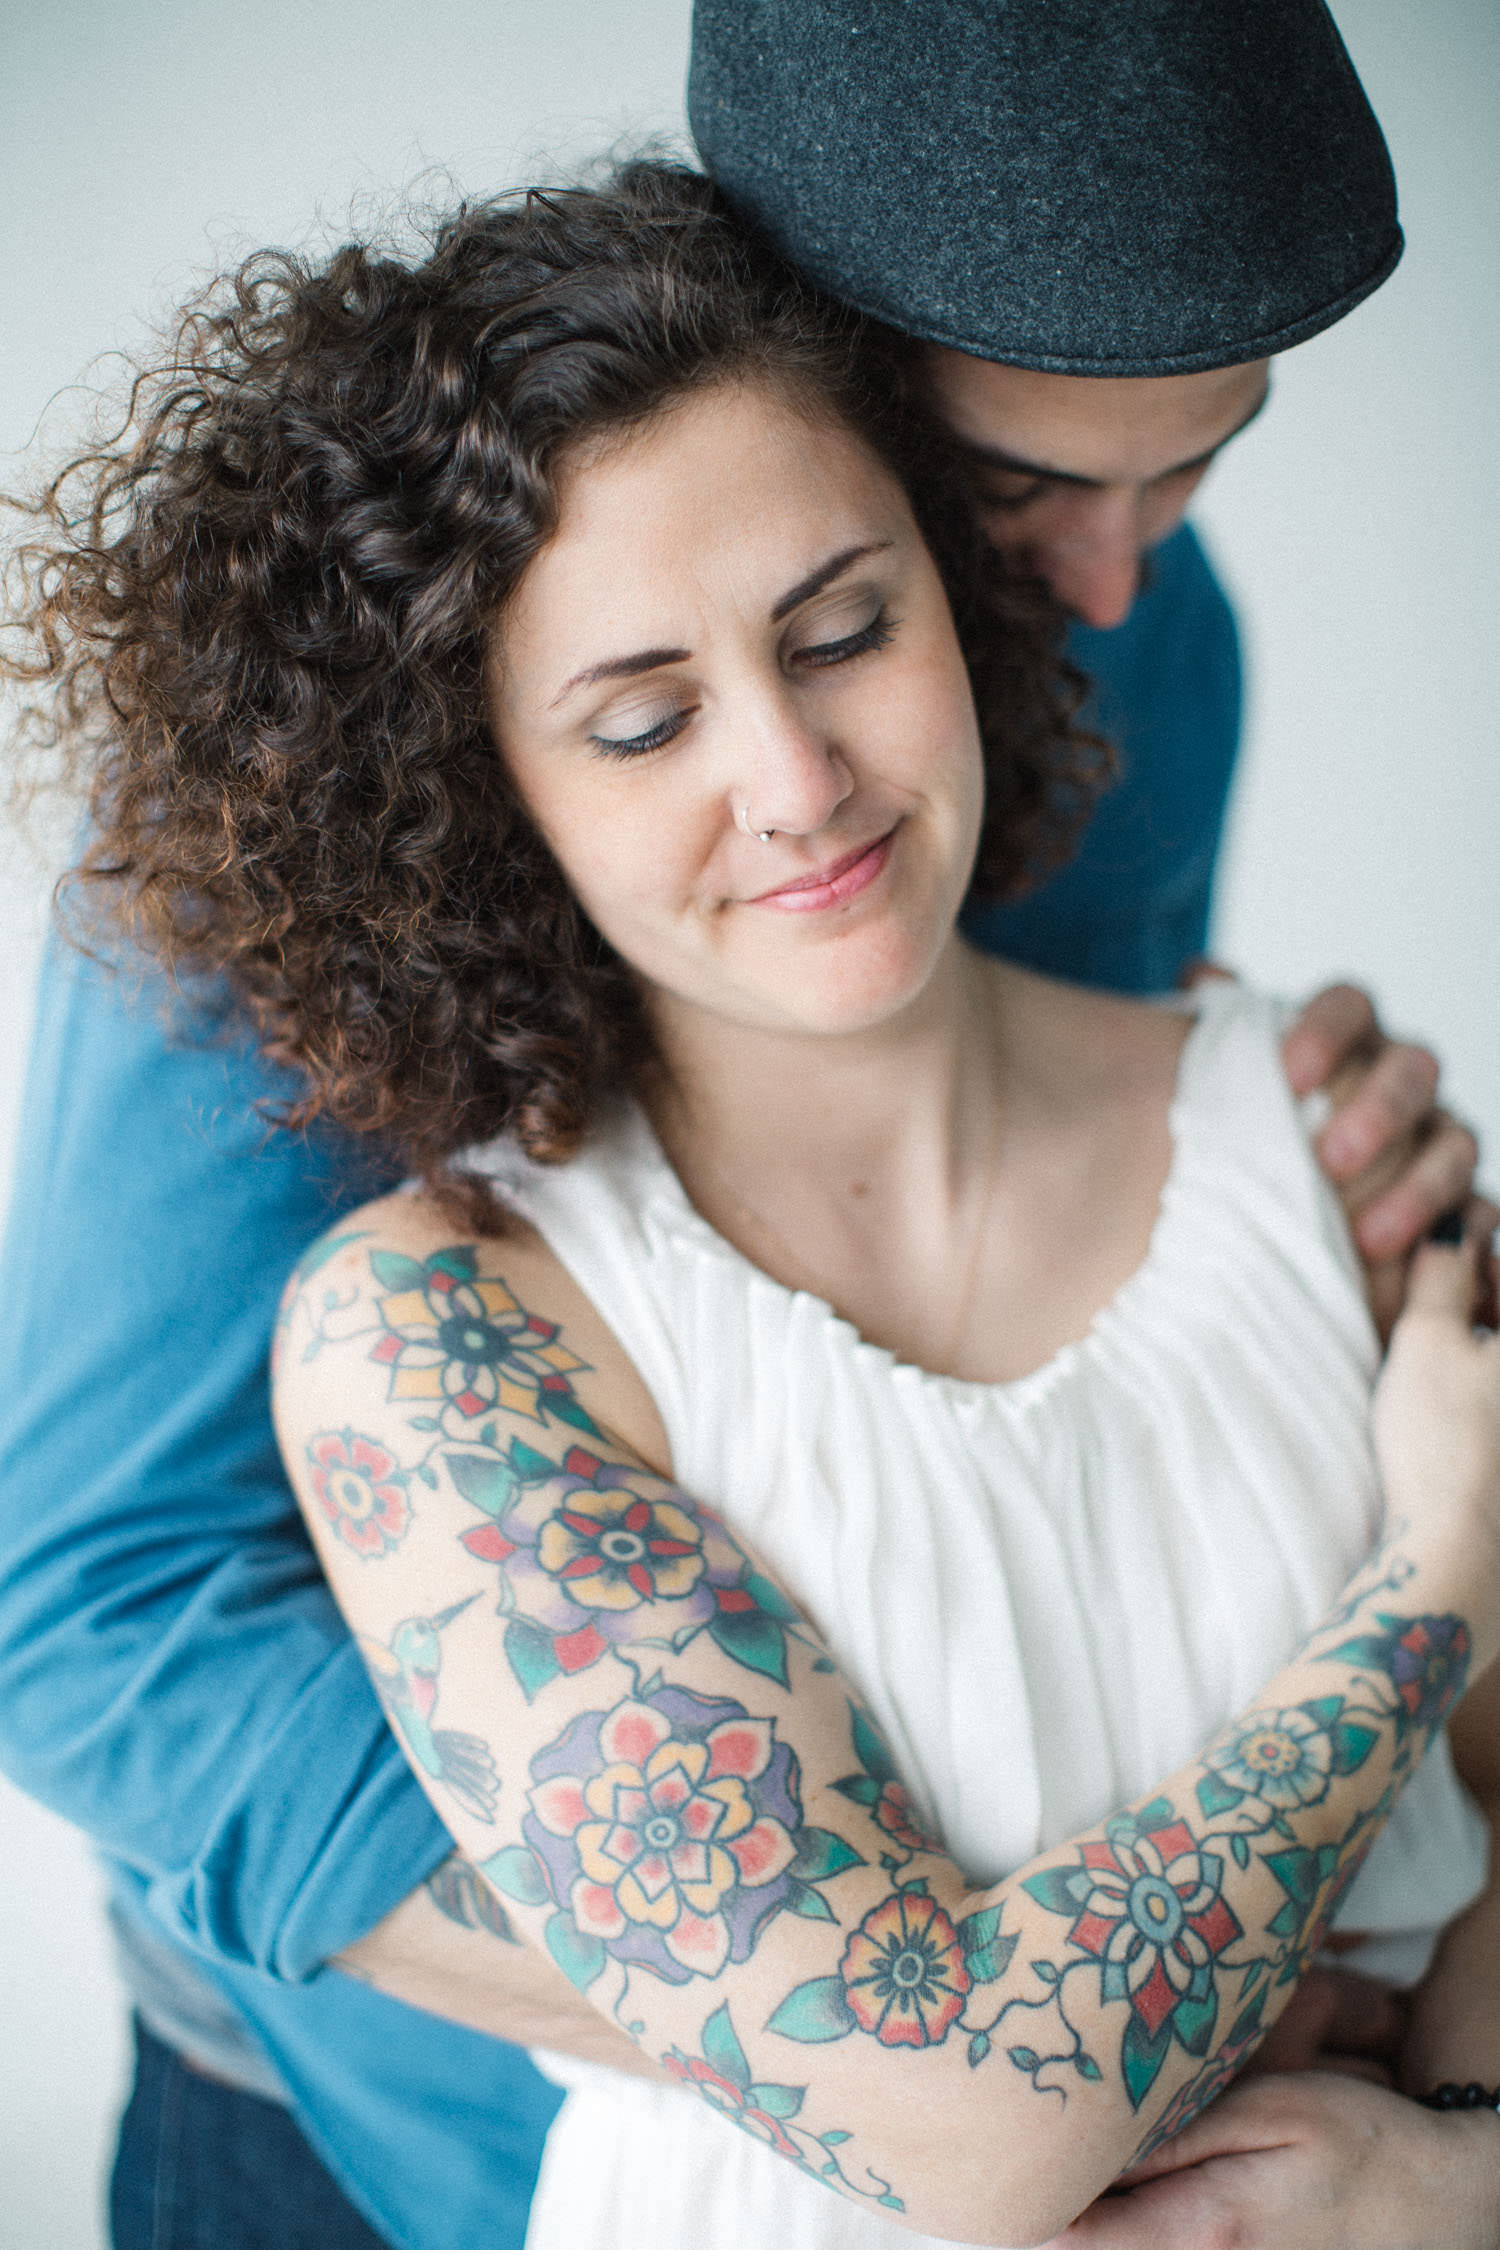 Kärleksporträtt på par med tatuering, porträttfotograf är Tove Lundquist, Skåne.